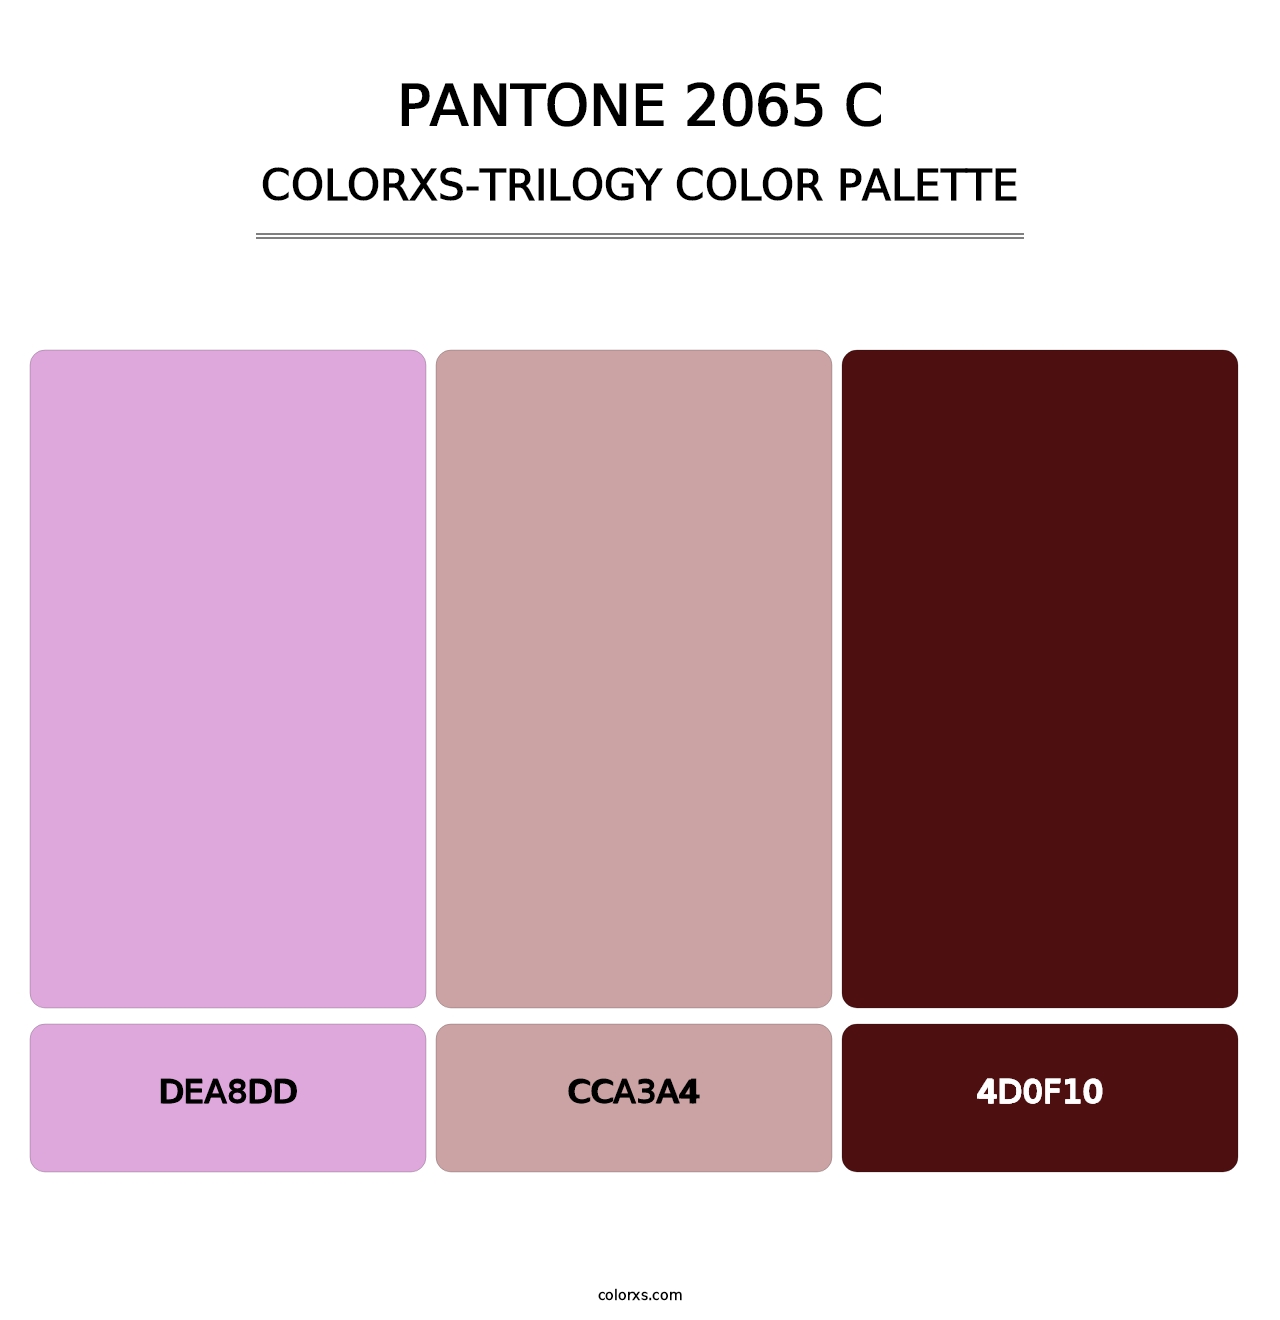 PANTONE 2065 C - Colorxs Trilogy Palette